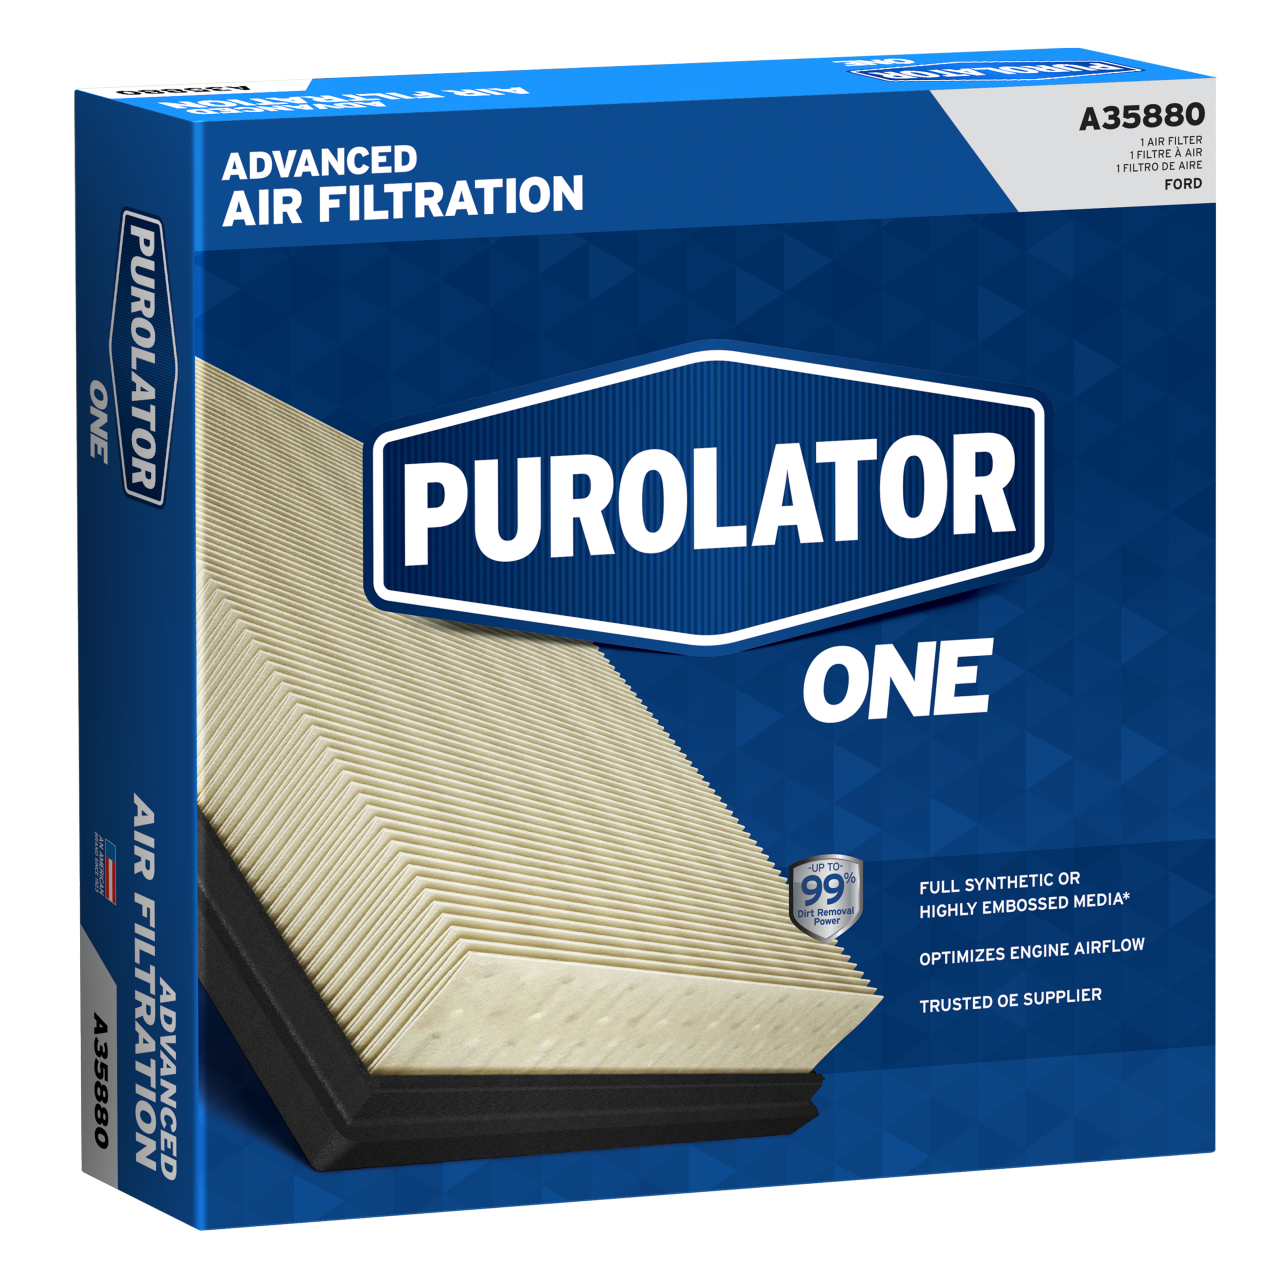 Protégez votre véhicule en remplaçant votre filtre à air par un filtre à air PurolatorONE™ pour une filtration d’air avancée.